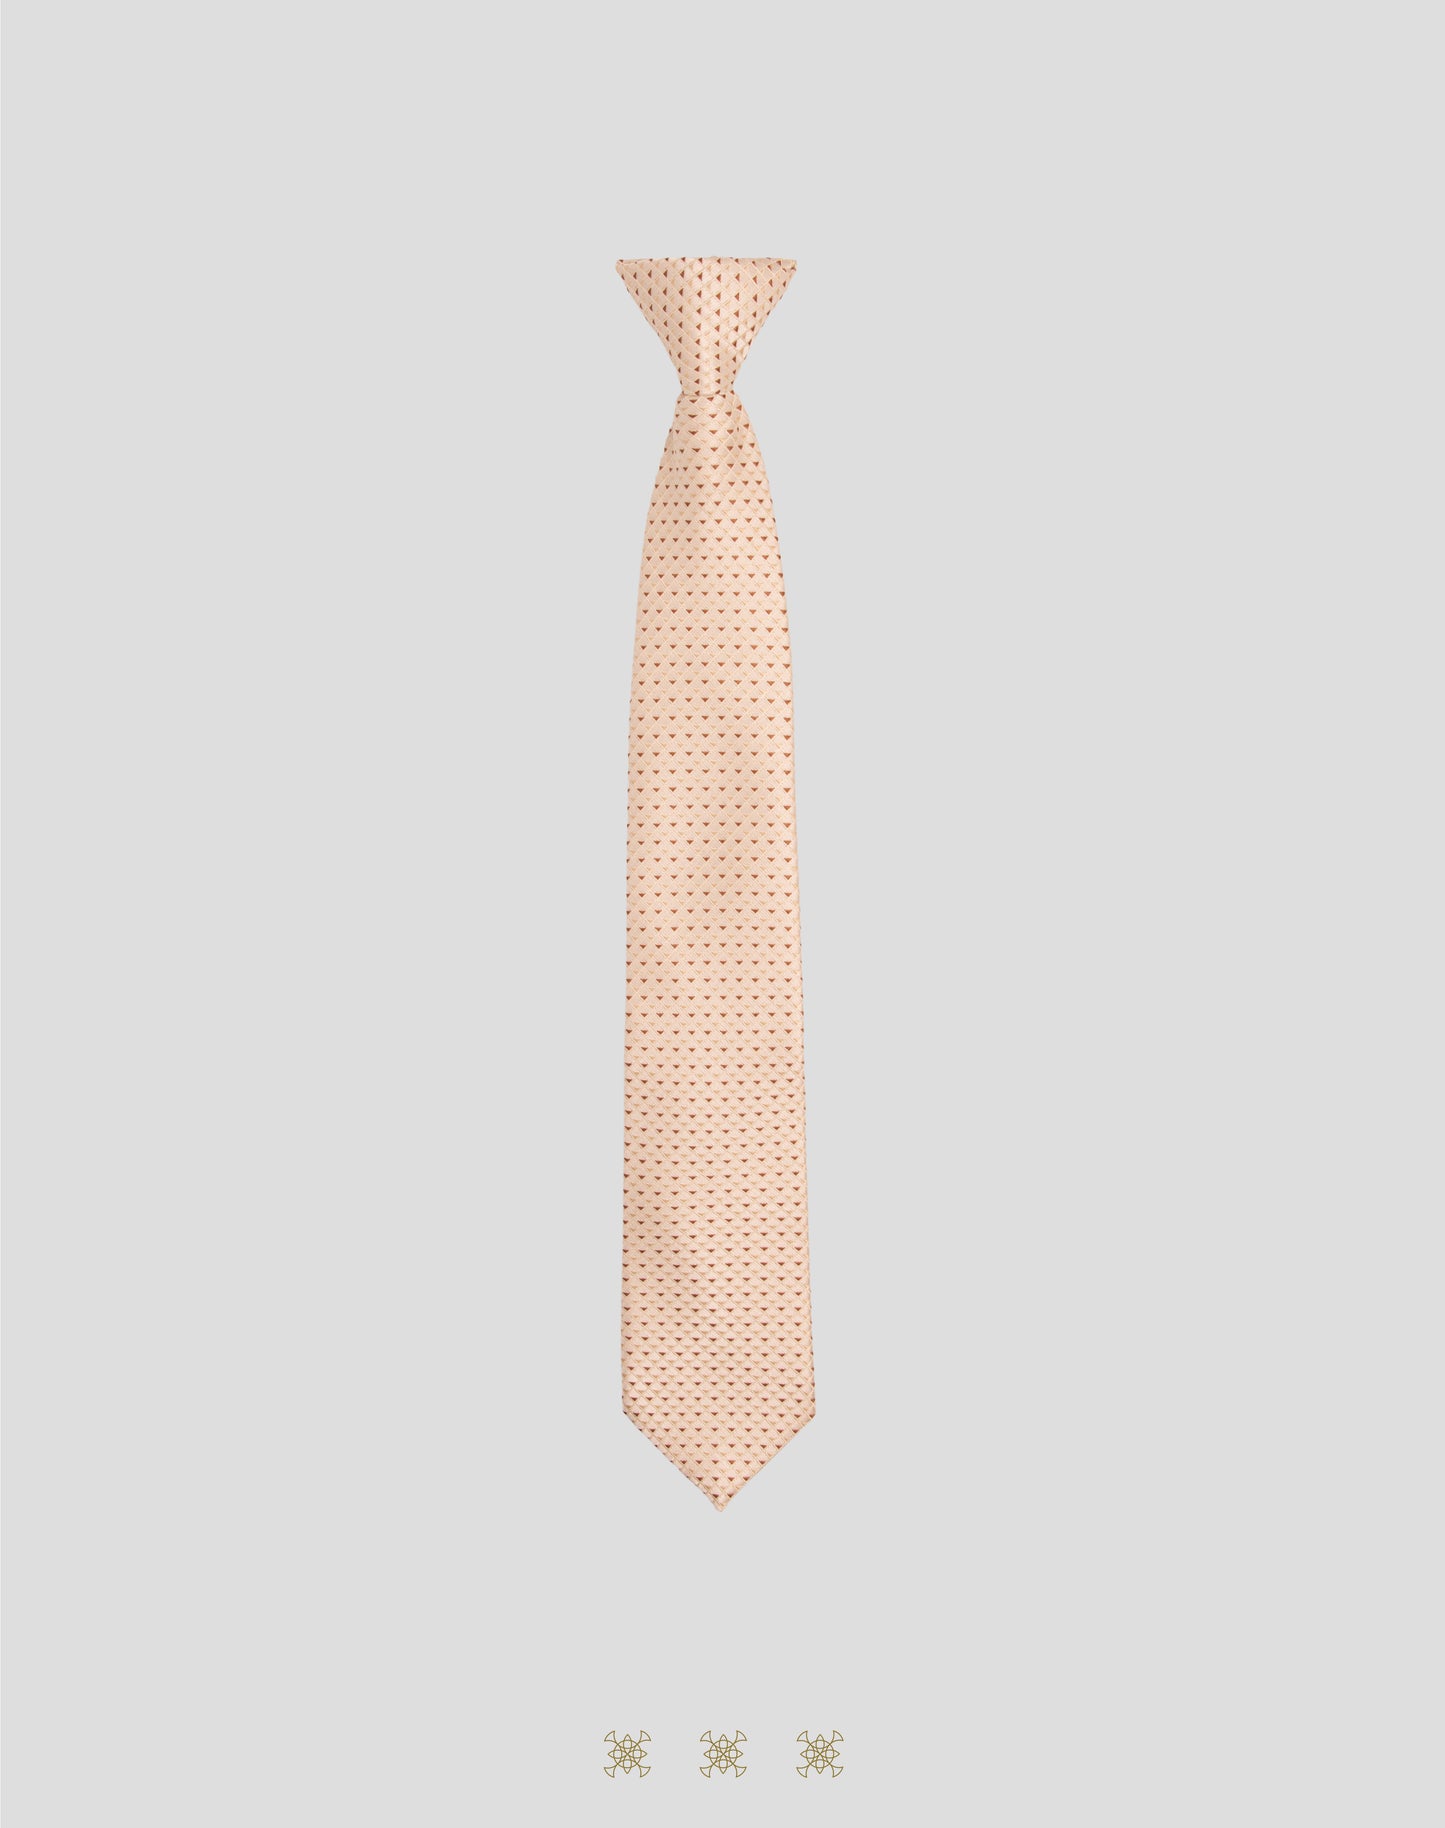 Corbata hueso con nudo 33-087